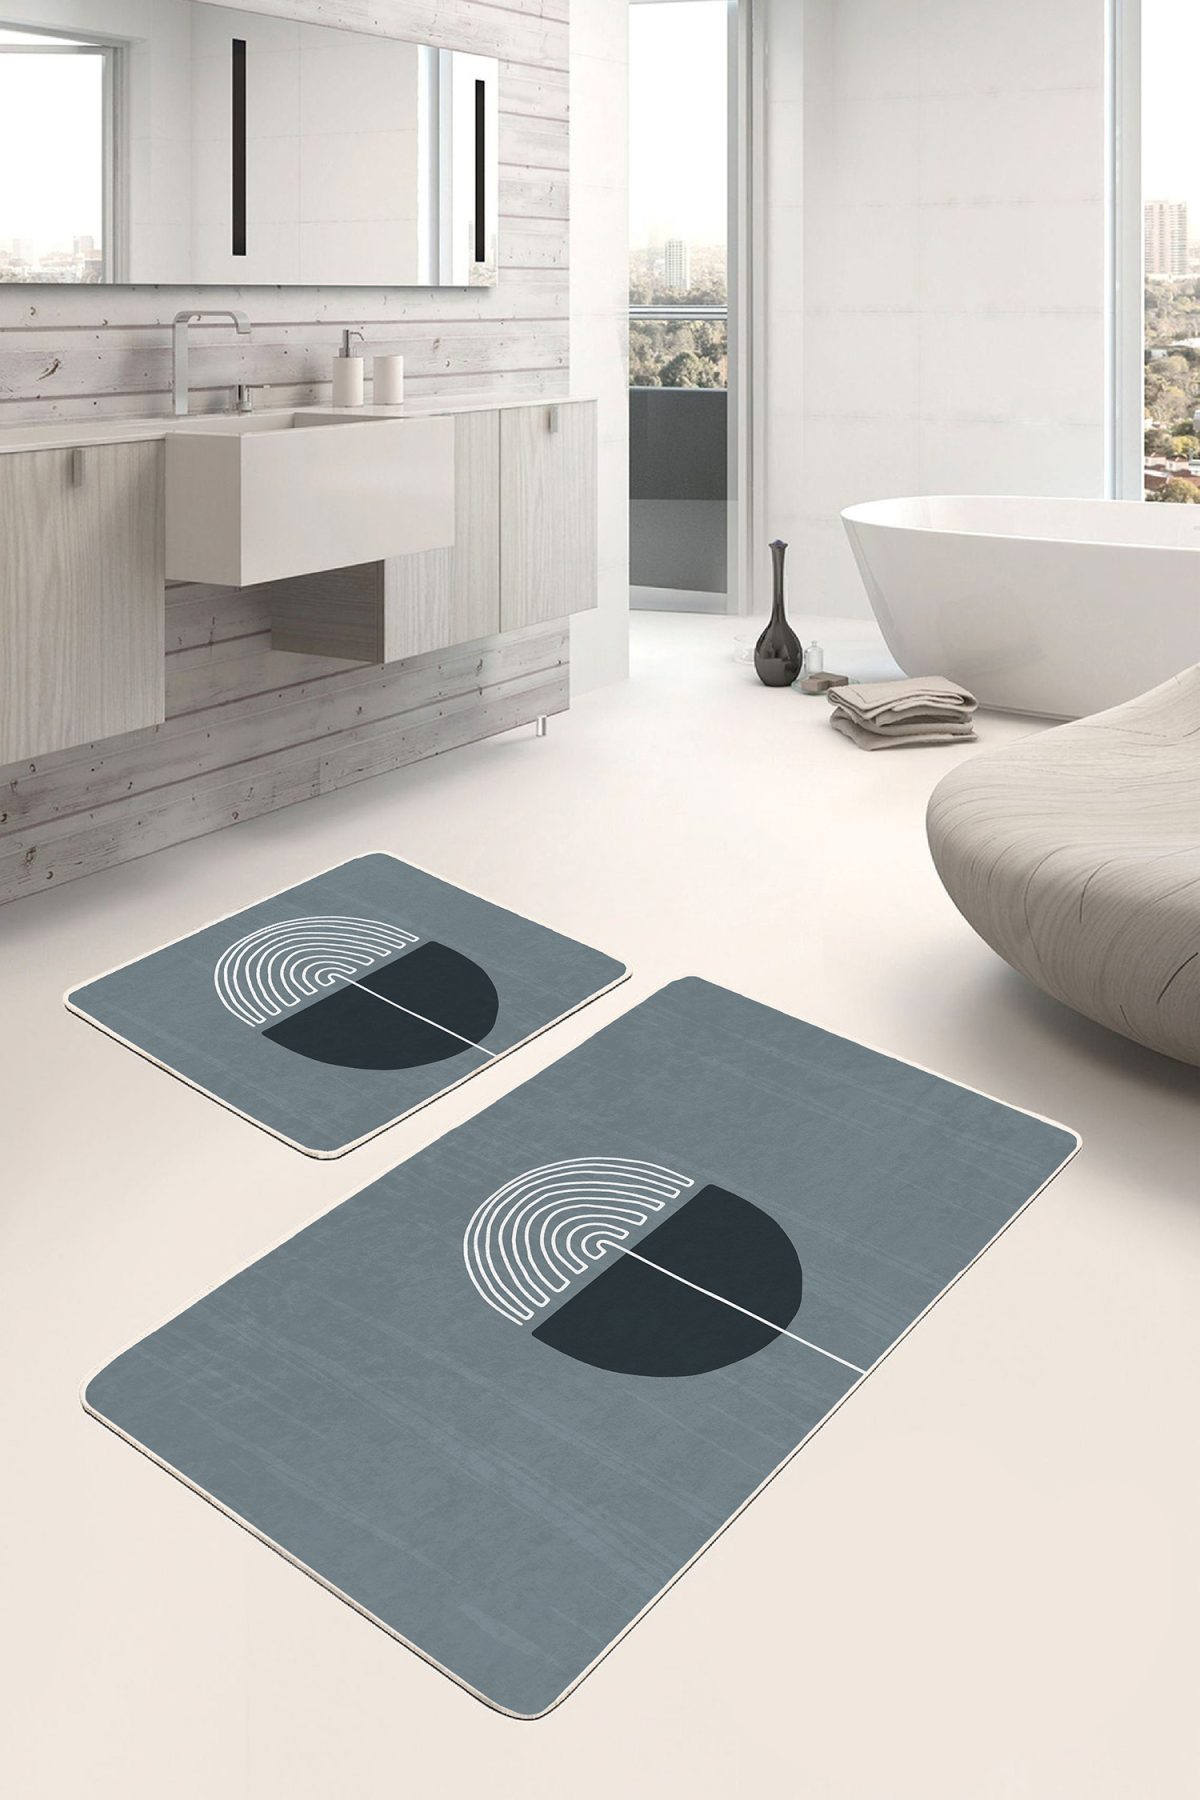 Onedraw Özel Tasarımlı Dijital Baskılı 2'li Kaymaz Tabanlı Banyo & Mutfak Paspas Takımı Realhomes